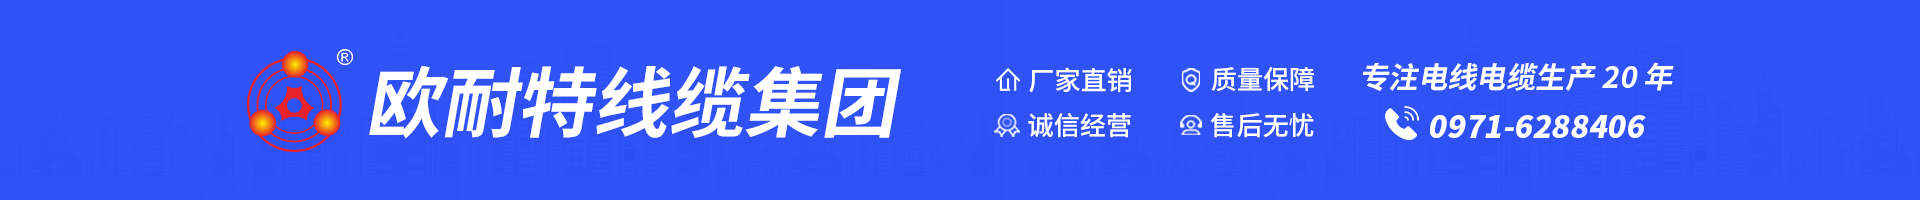 欧耐特线缆集团_Logo